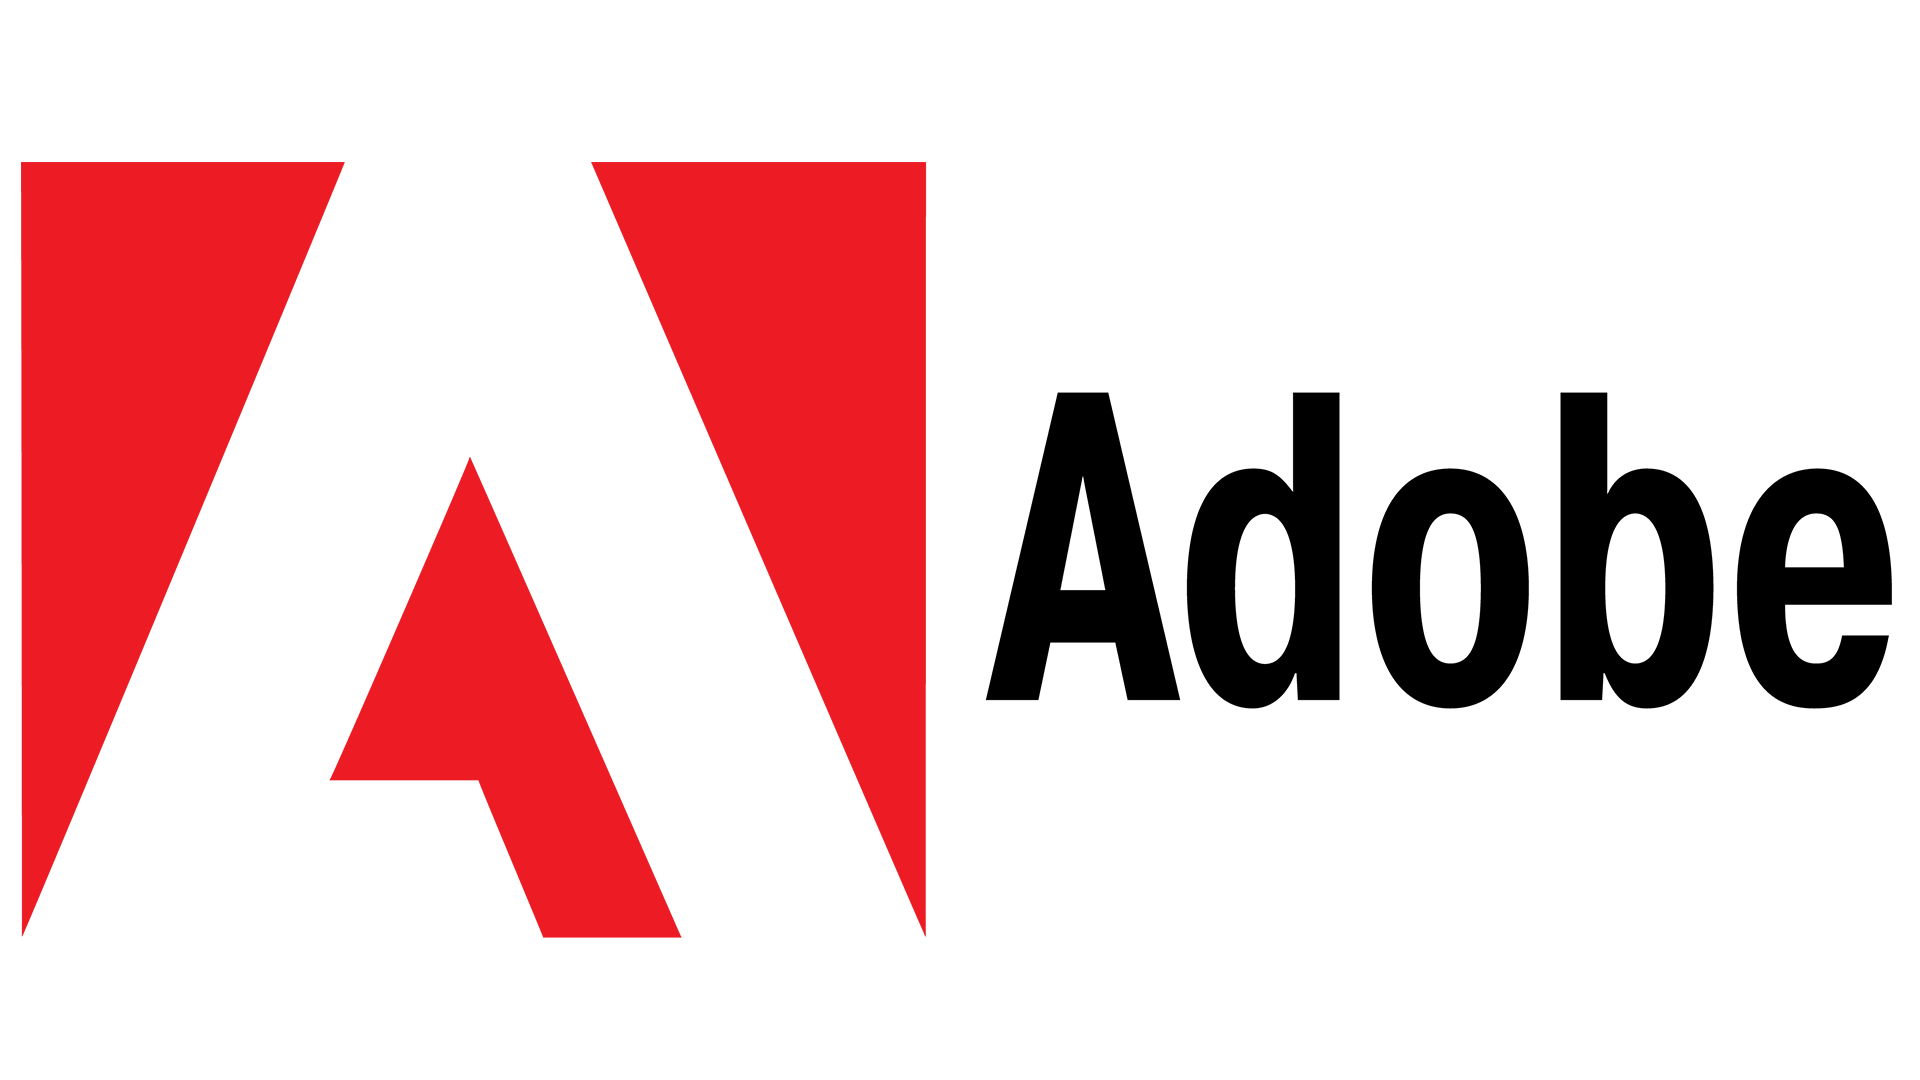 Logo-Adobe